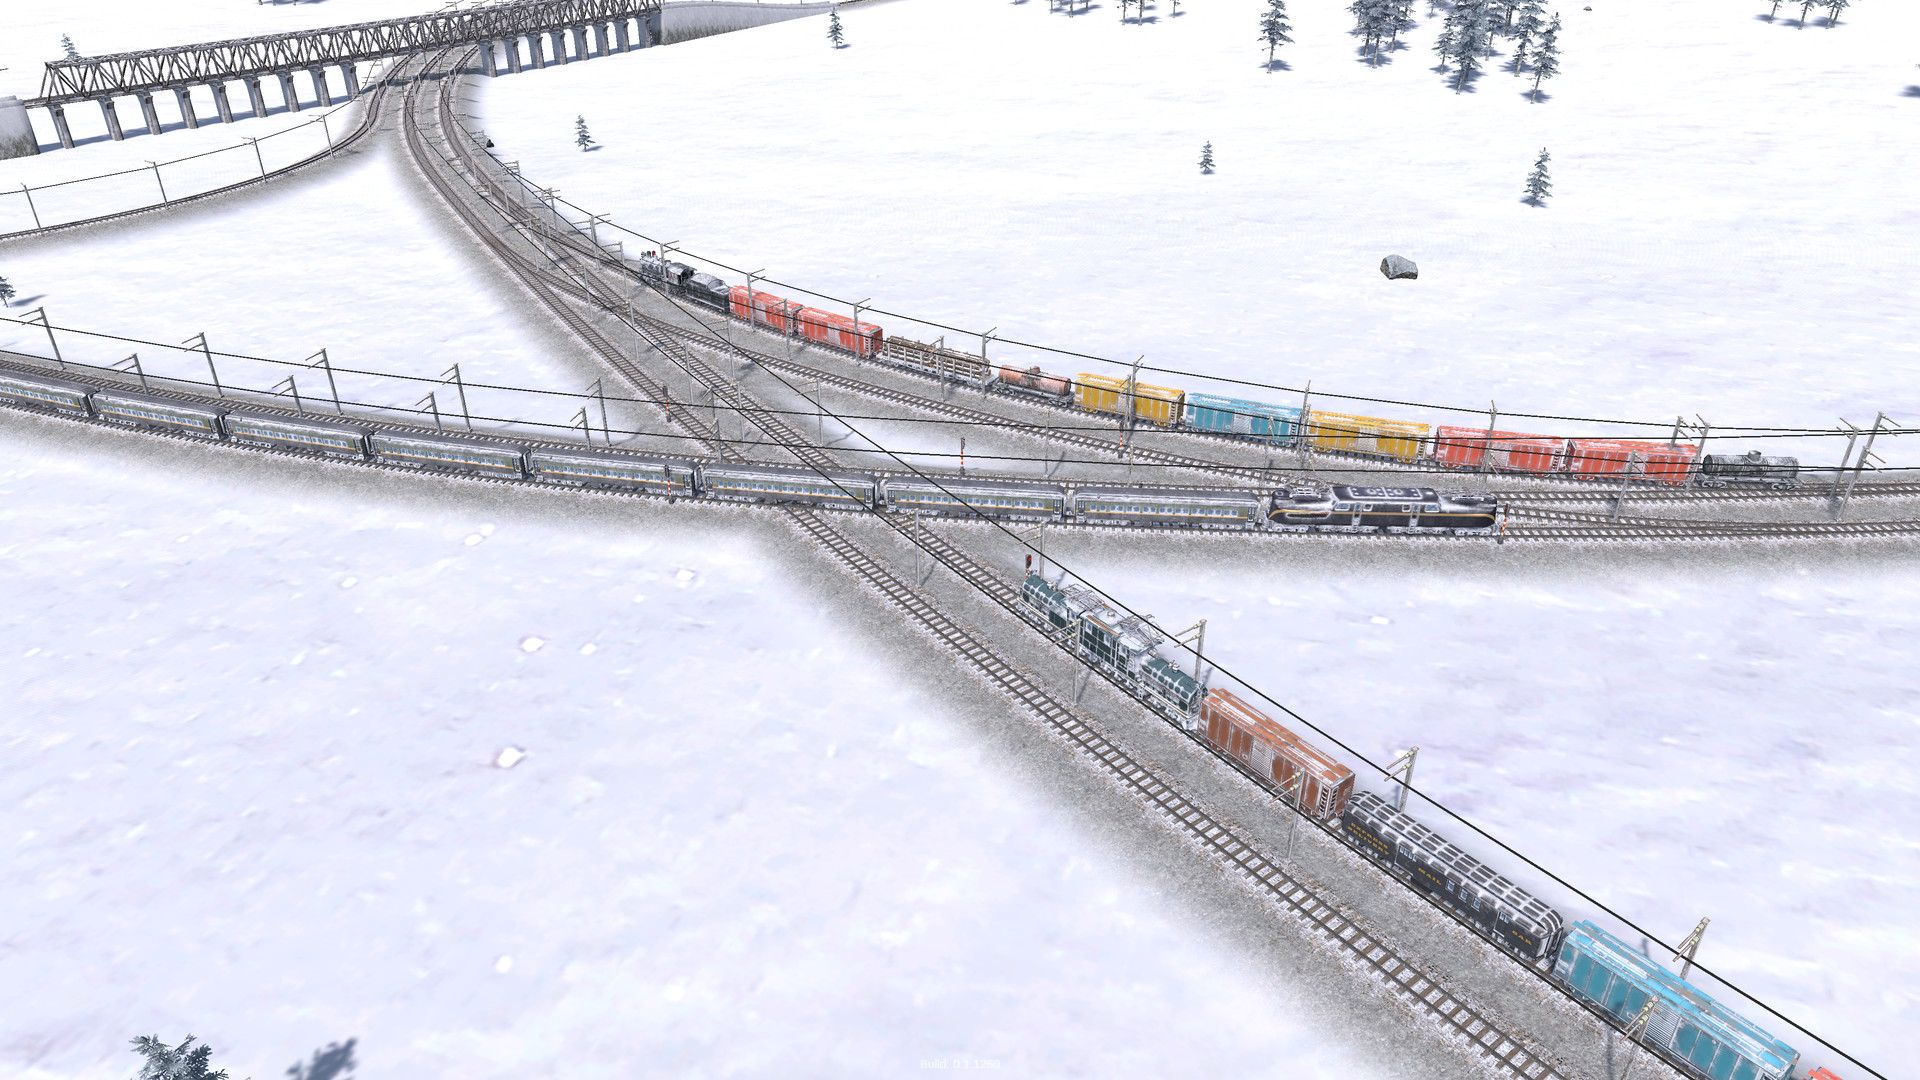 沙盒策略模拟游戏《铁道公司2》现已在Steam平台推出试玩Demo